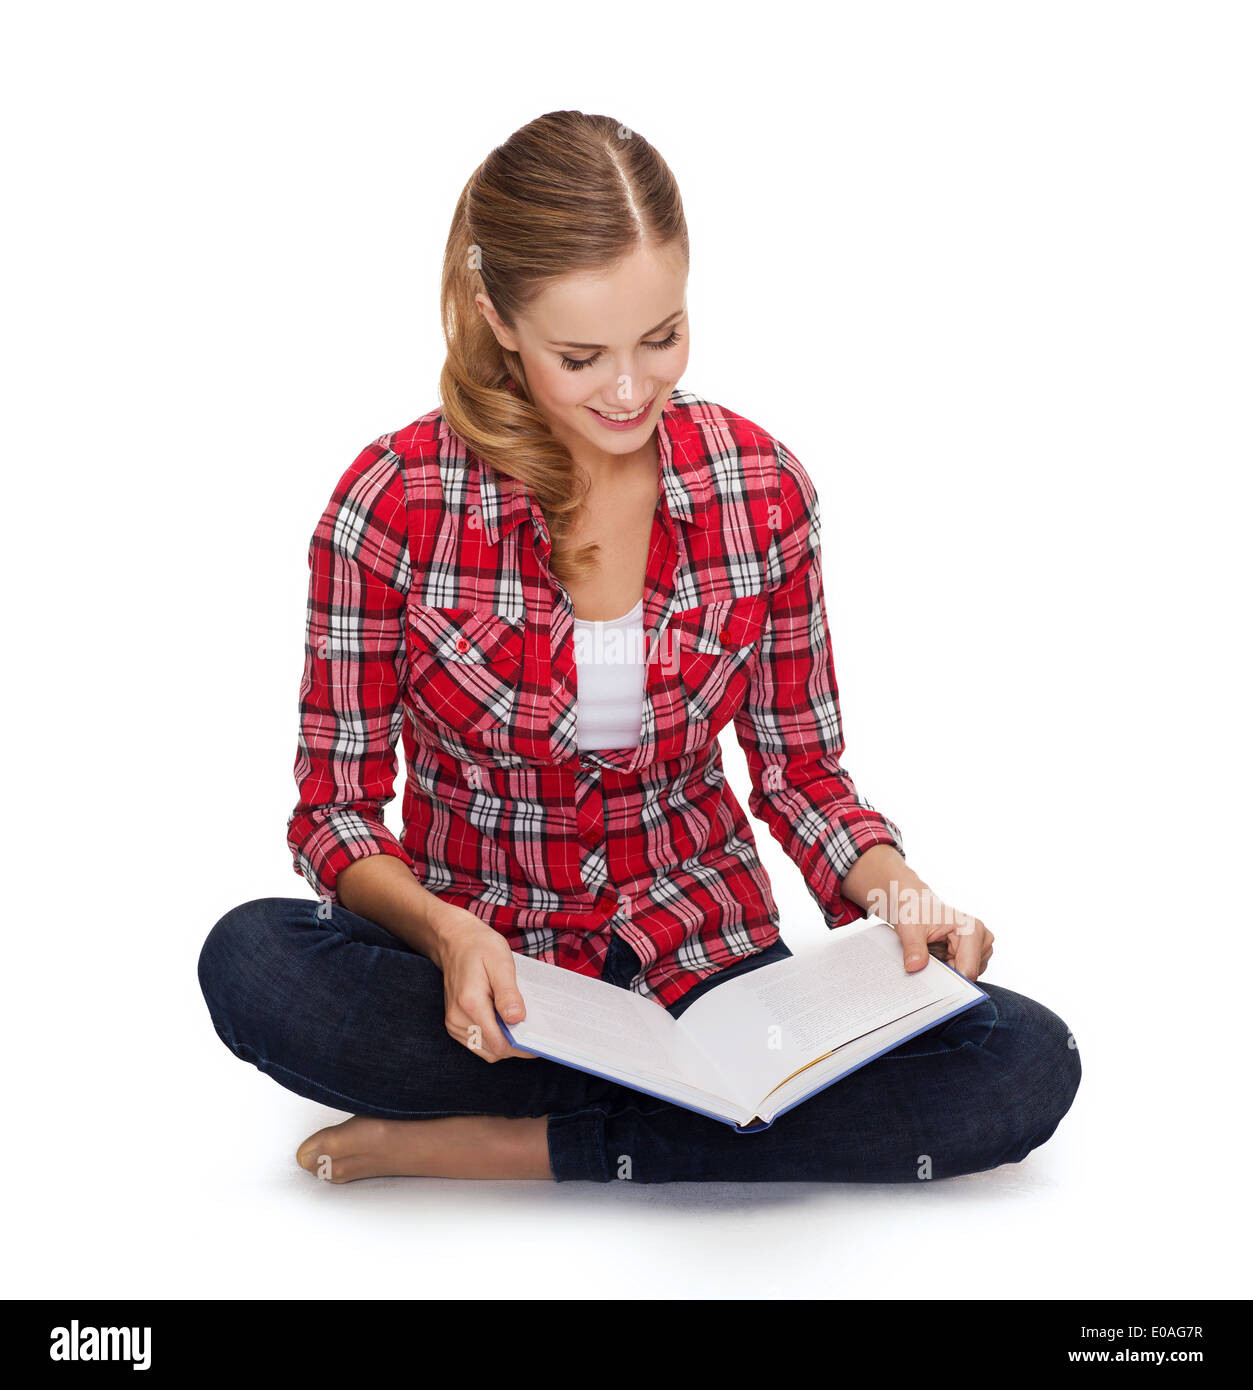 Сидящая женщина с книгой. Девушка сидит читает книгу. Девушка сидит на полу с книгой. Девочка читает сидя на полу. Девушка сидит с книгой.